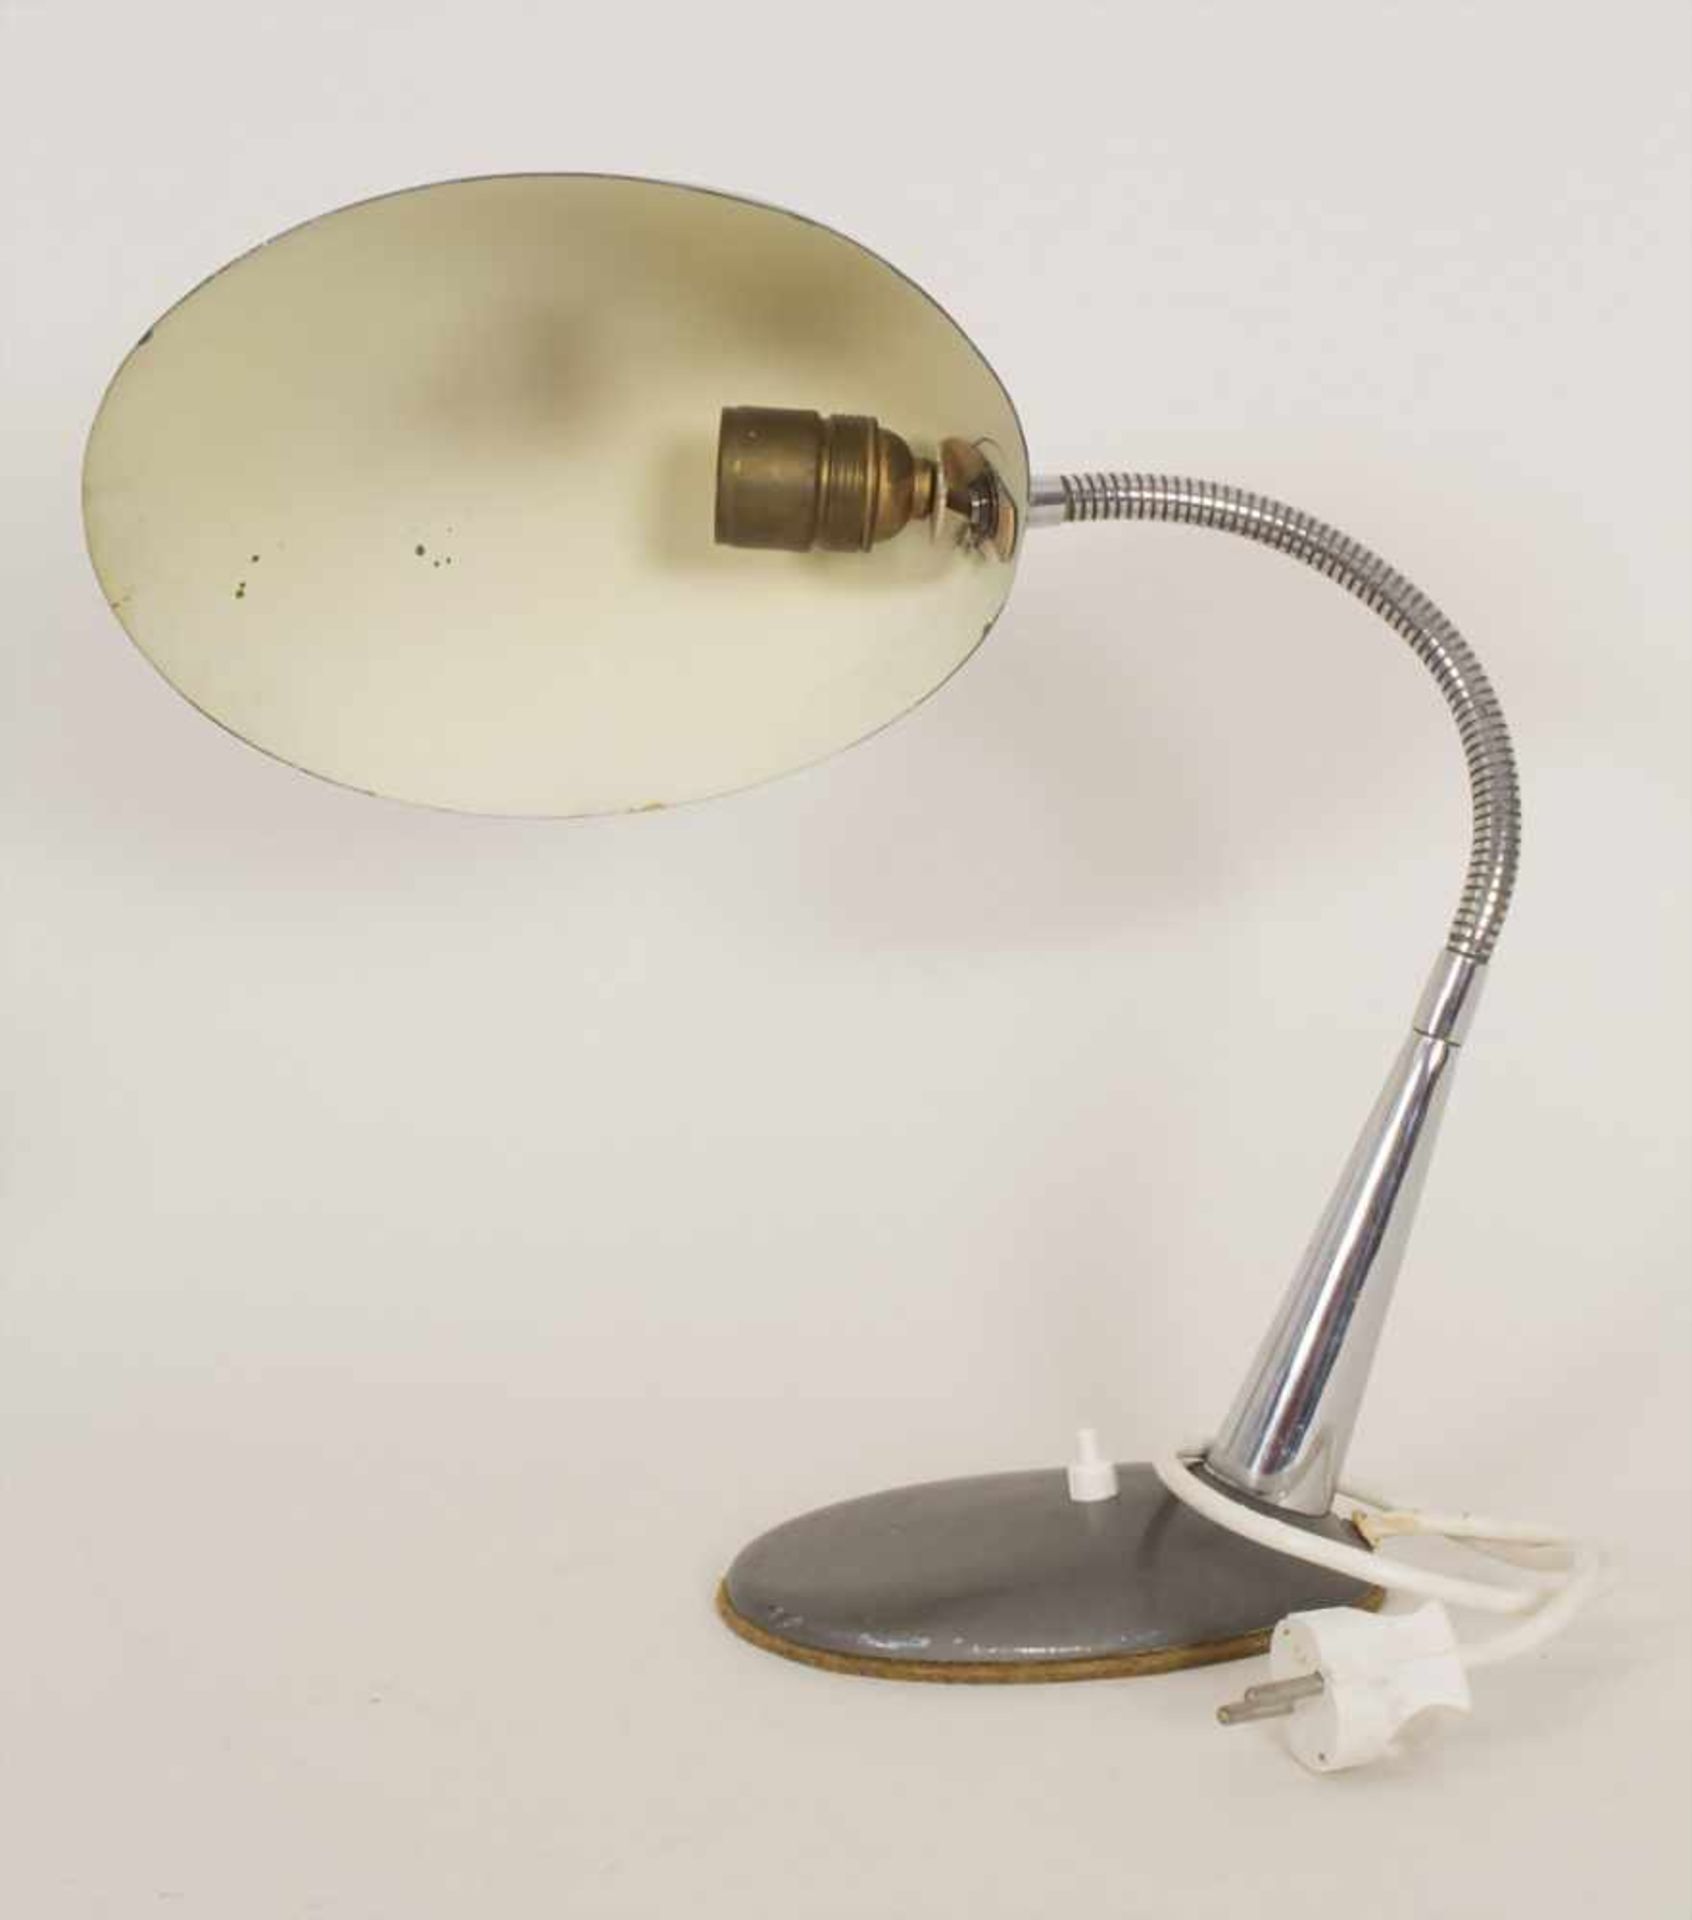 Schreibtischlampe / A desk lamp, um 1950Material: Schirm in Aluminium mit dunkelgrauem - Bild 4 aus 5